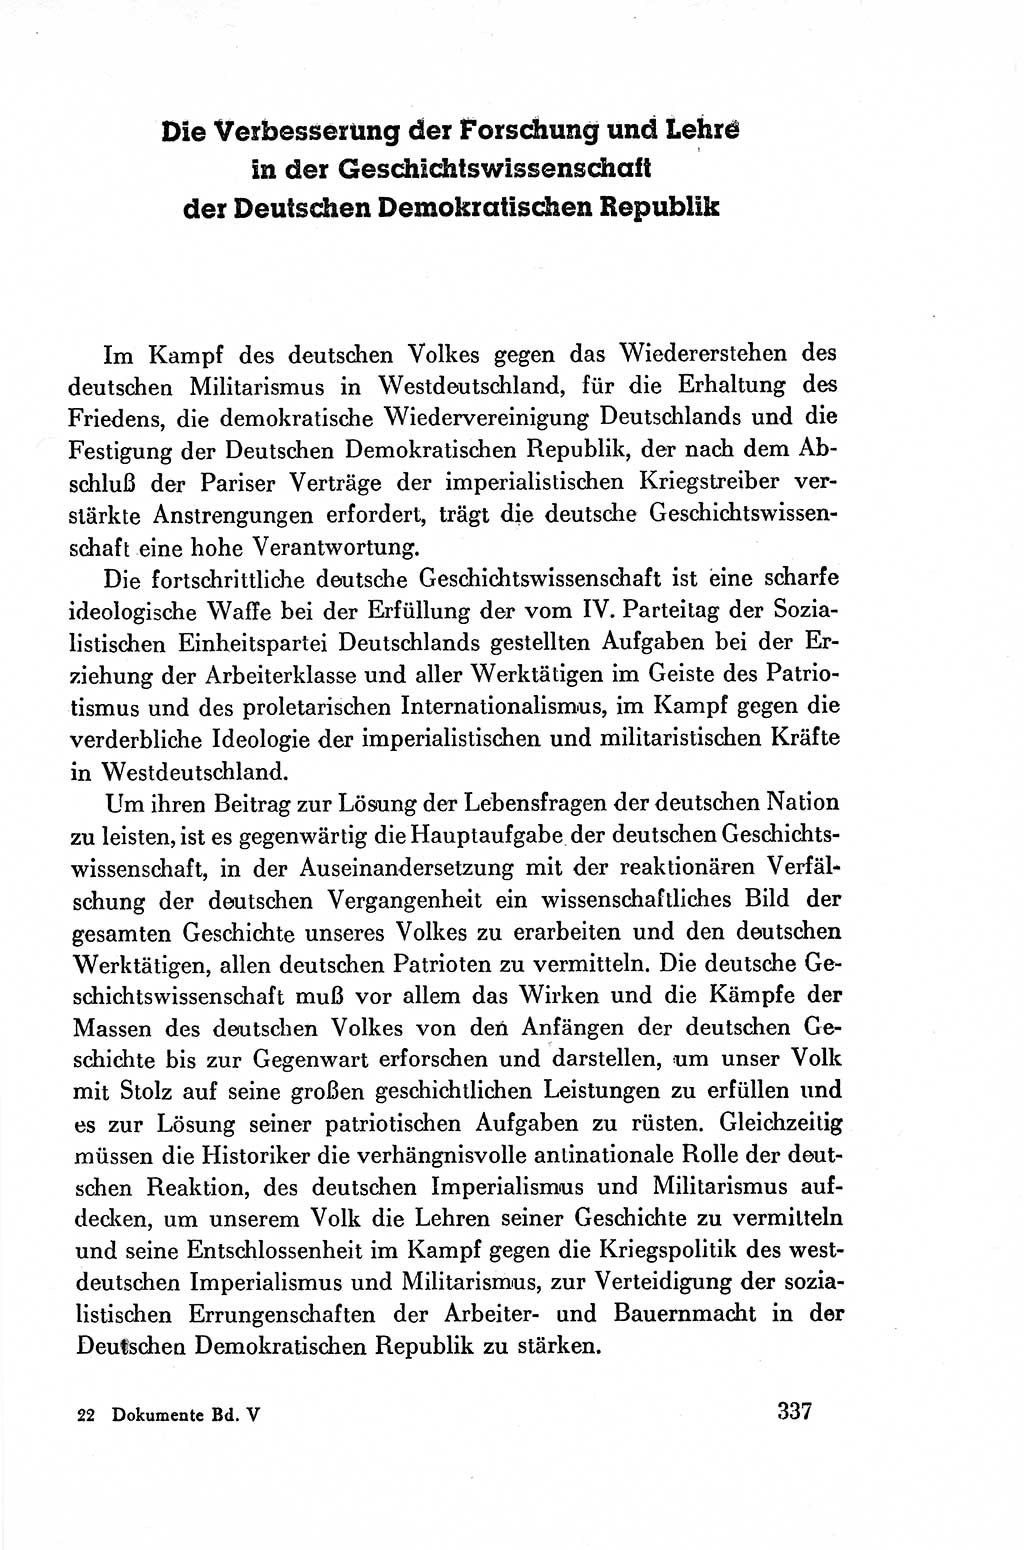 Dokumente der Sozialistischen Einheitspartei Deutschlands (SED) [Deutsche Demokratische Republik (DDR)] 1954-1955, Seite 337 (Dok. SED DDR 1954-1955, S. 337)